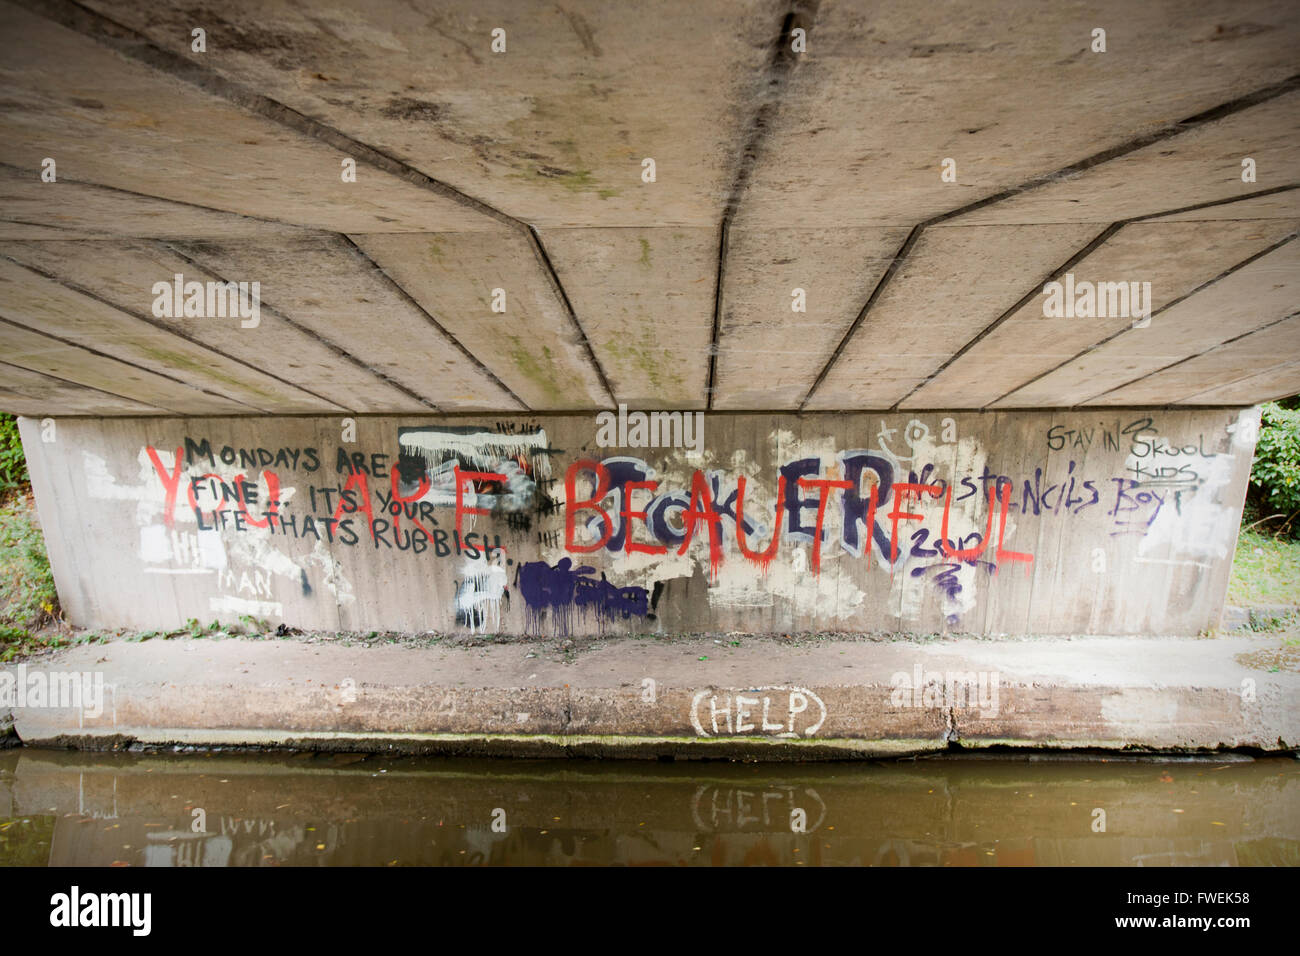 Graffiti under canal bridge in Cheshire UK Stock Photo